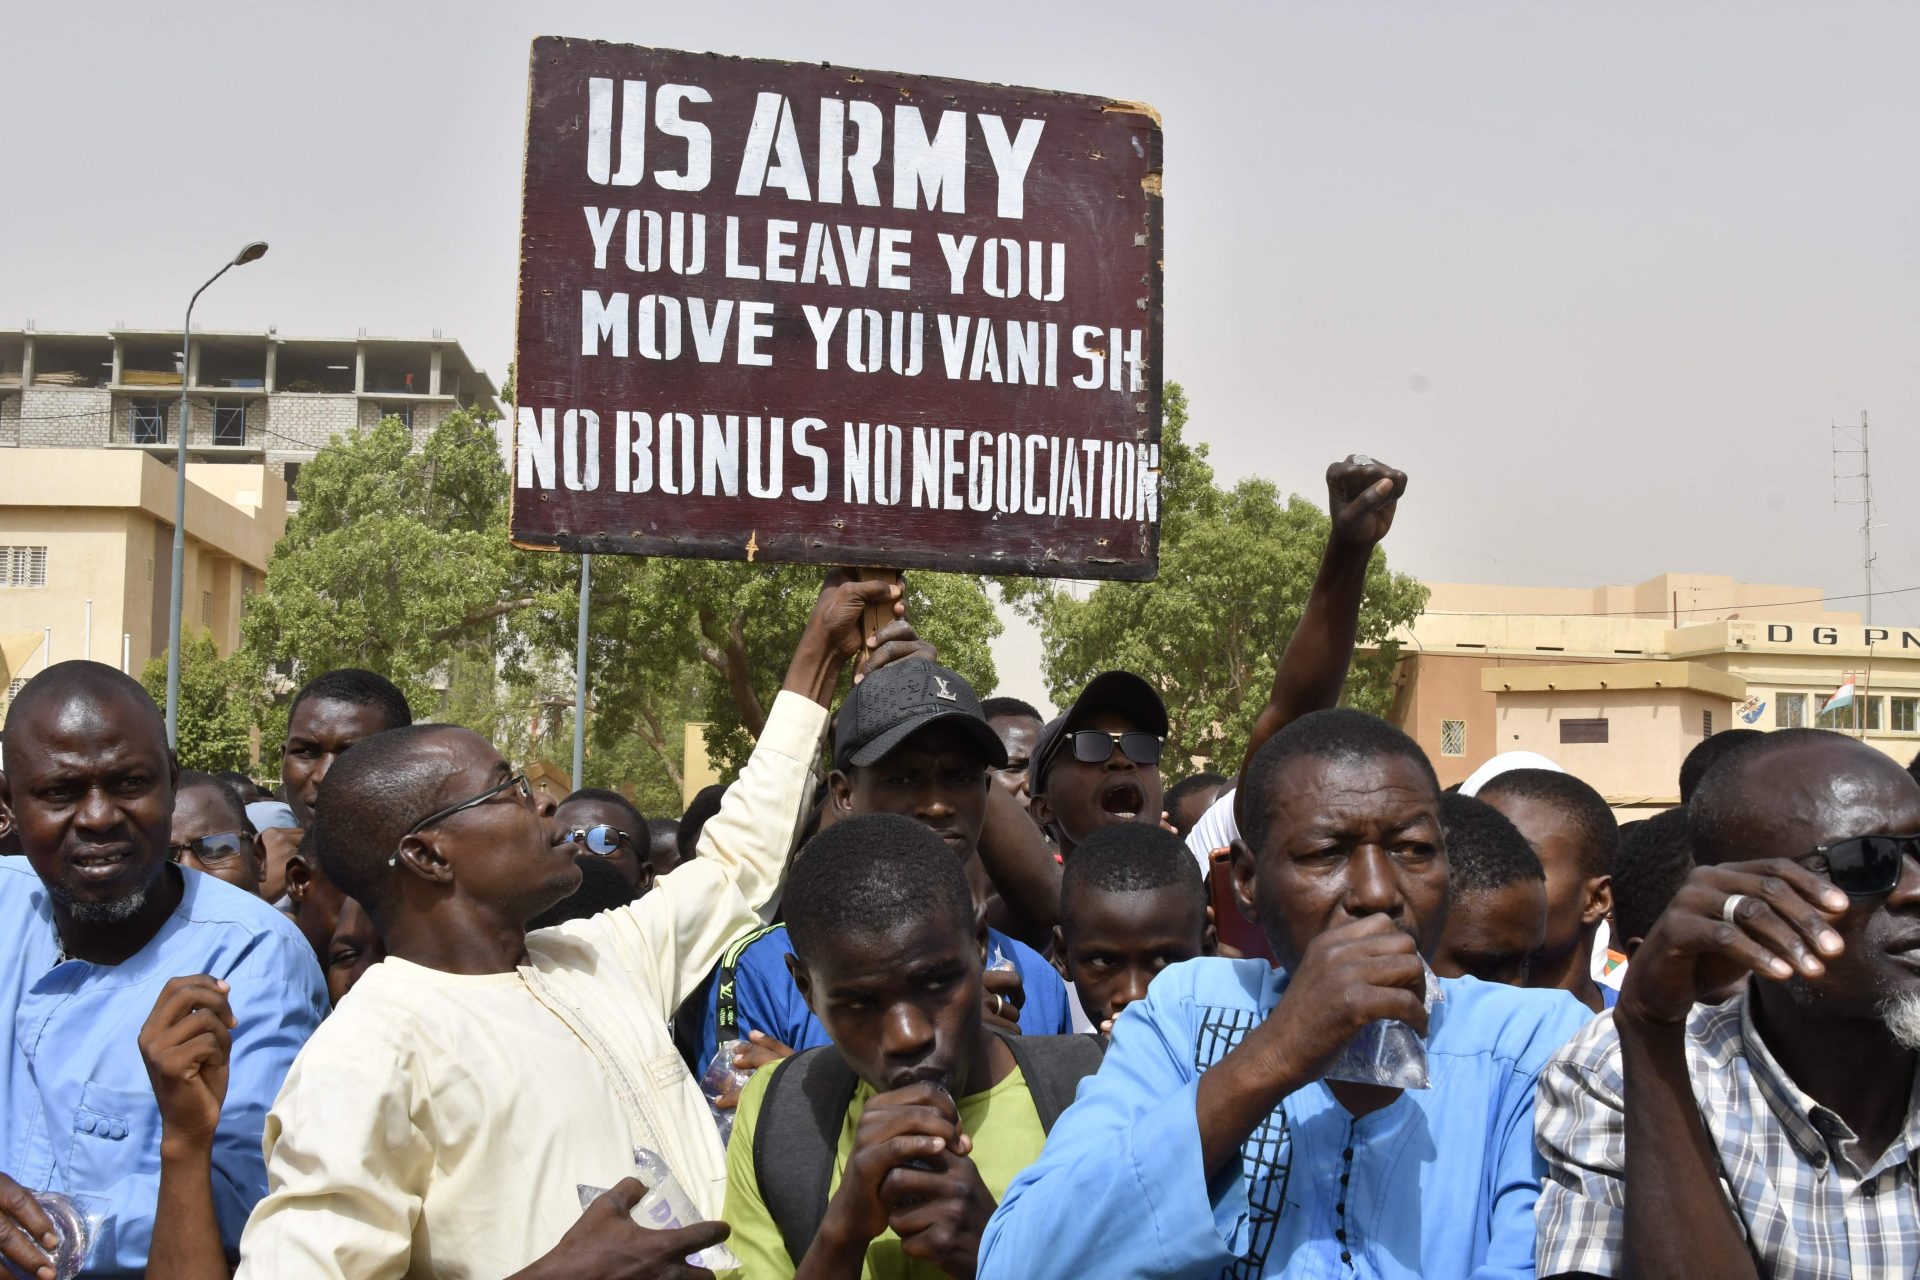 Níger. Retirada de tropas dos EUA em negociação